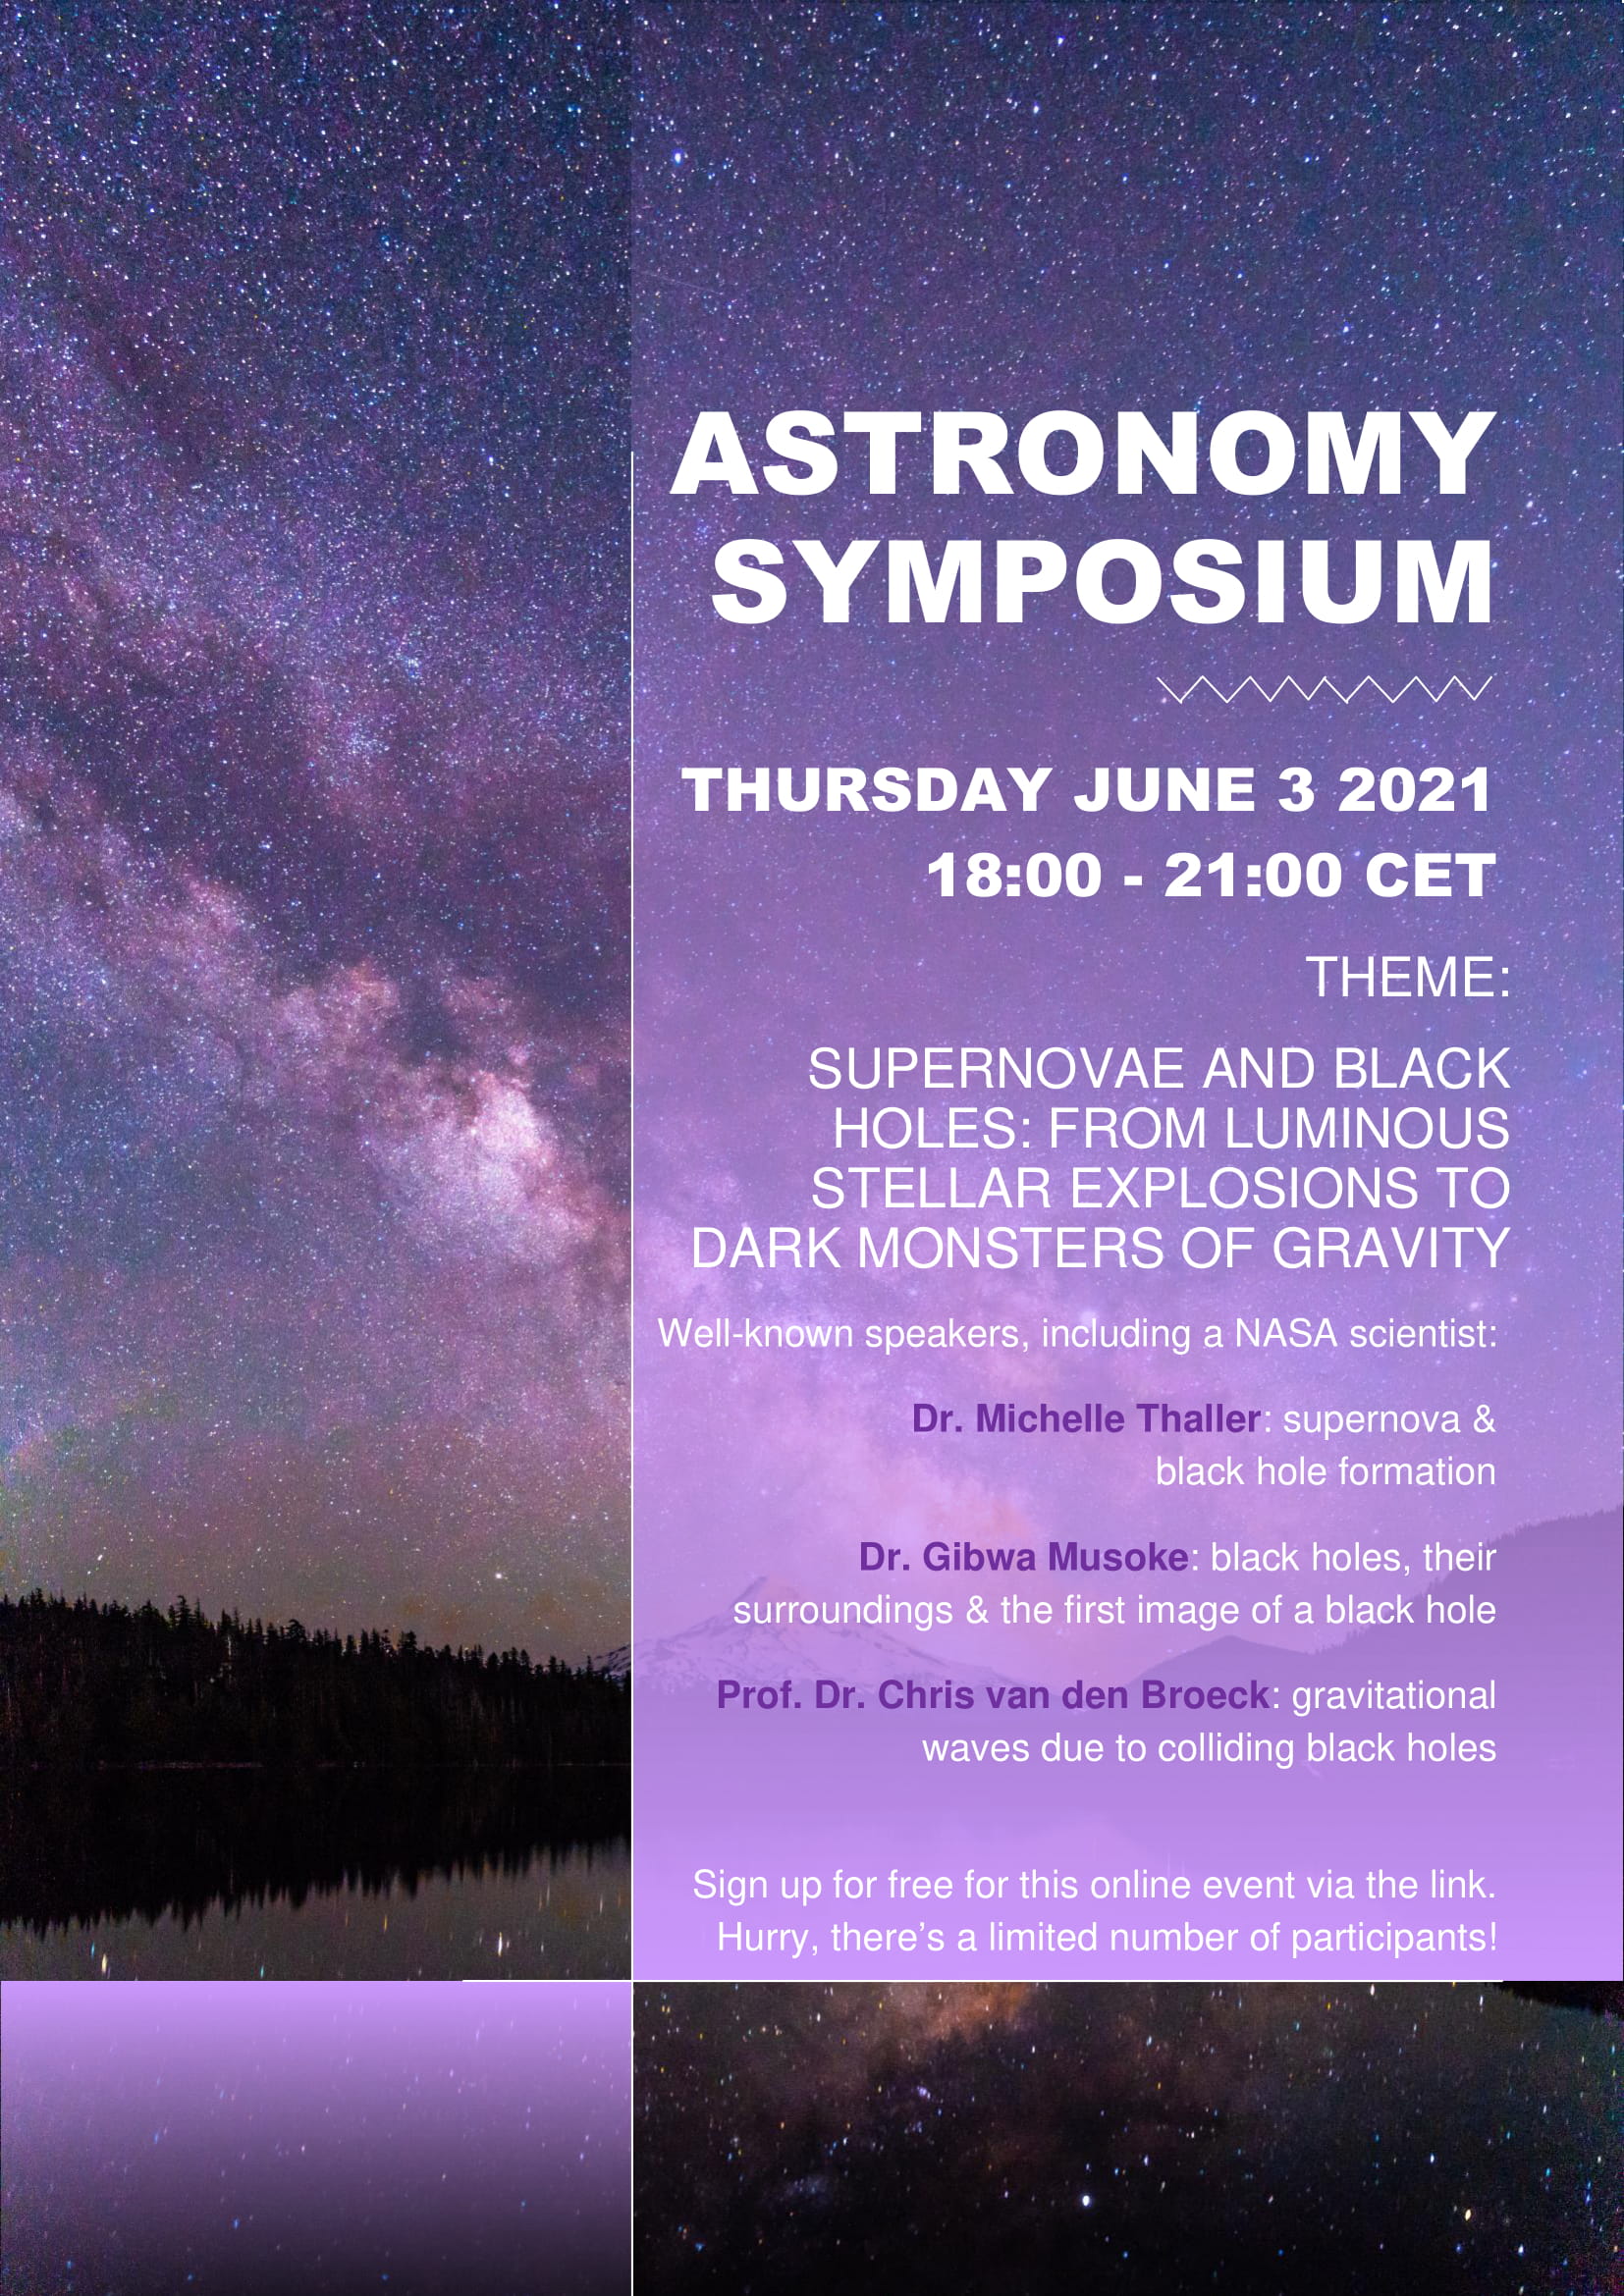 Symposium poster